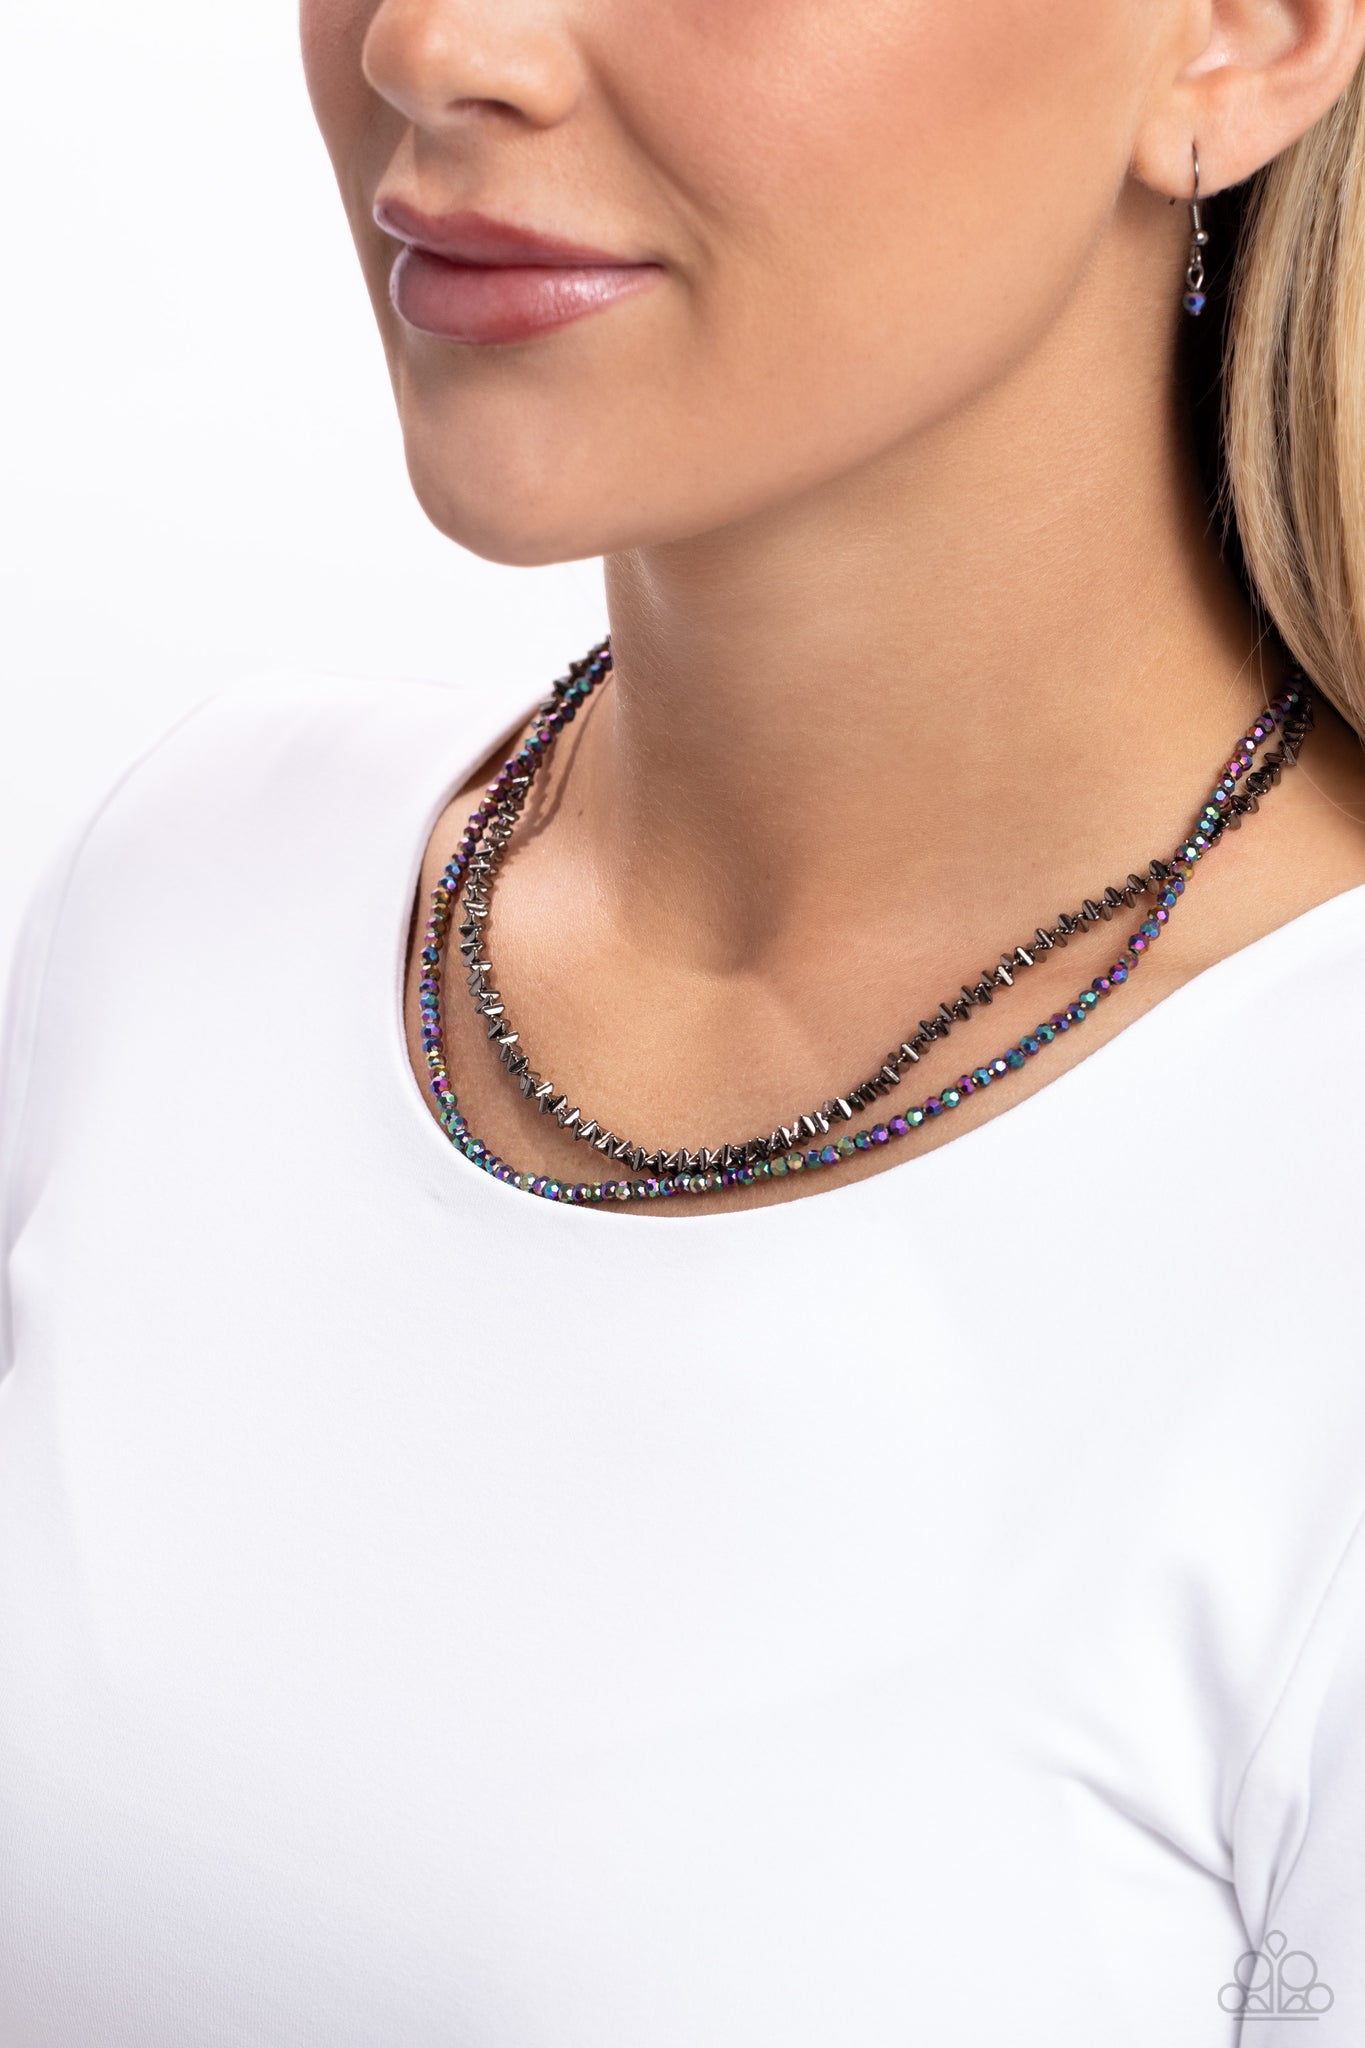 White-Collar Week Necklace (Black, Pink, Multi)